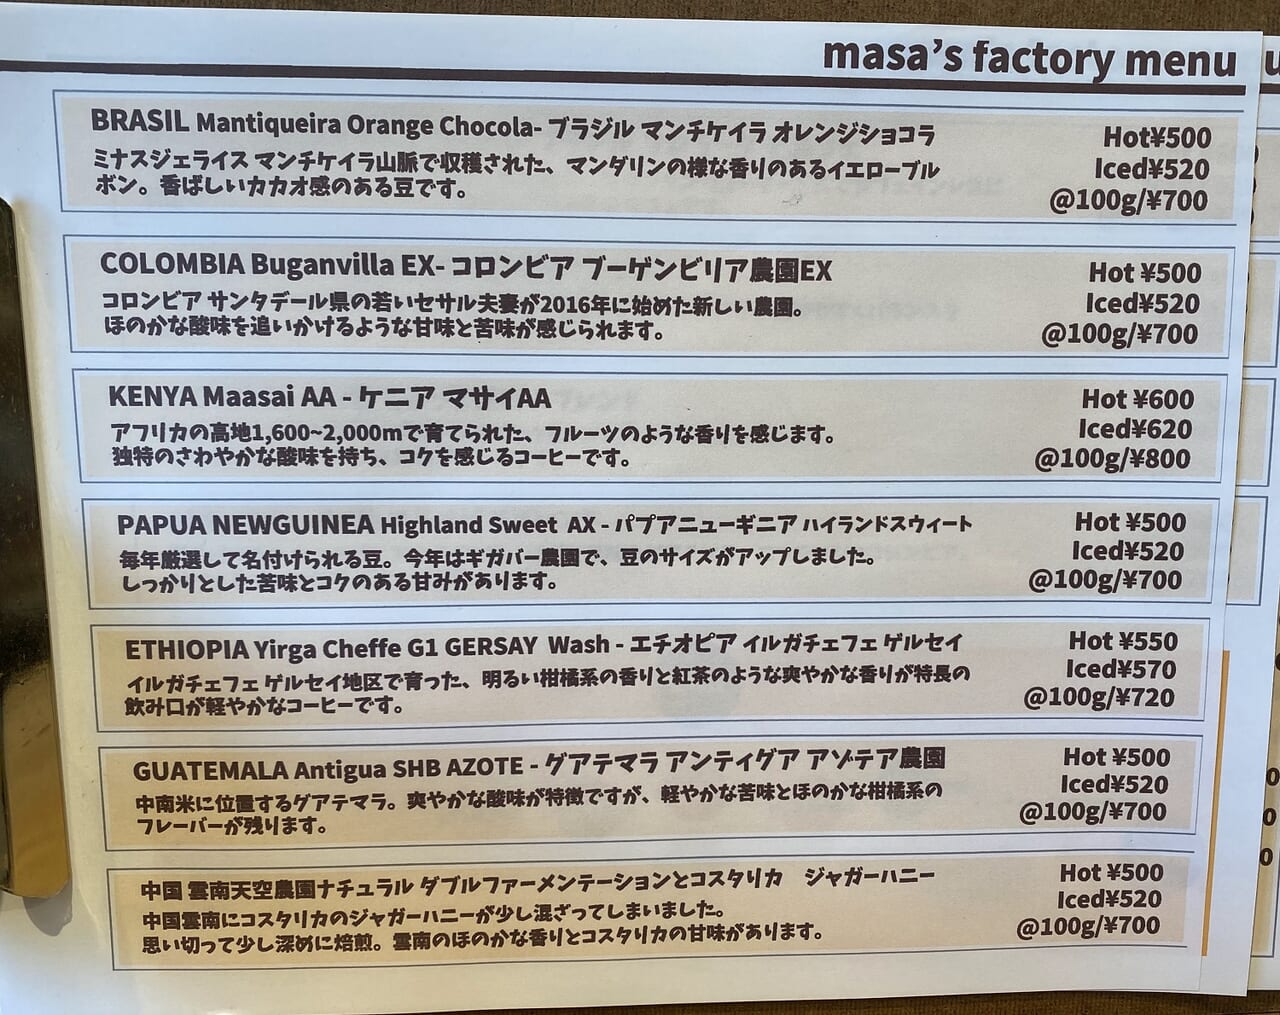 masa's factoryのメニュー